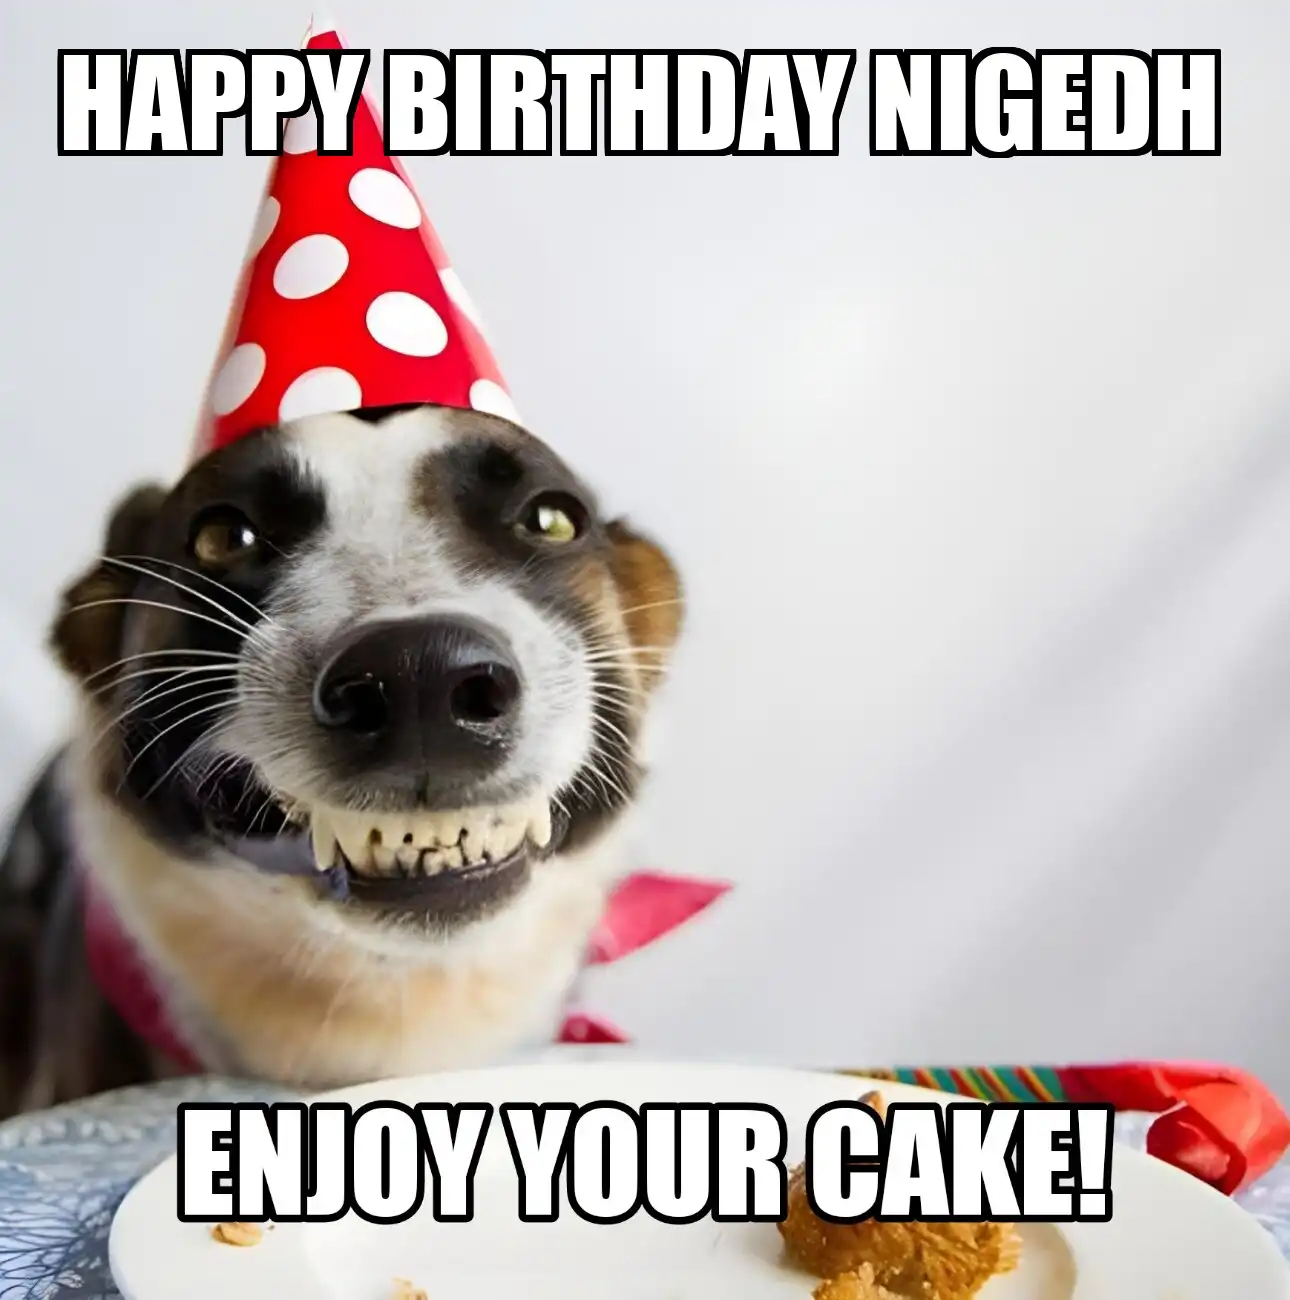 Happy Birthday Nigedh Enjoy Your Cake Dog Meme